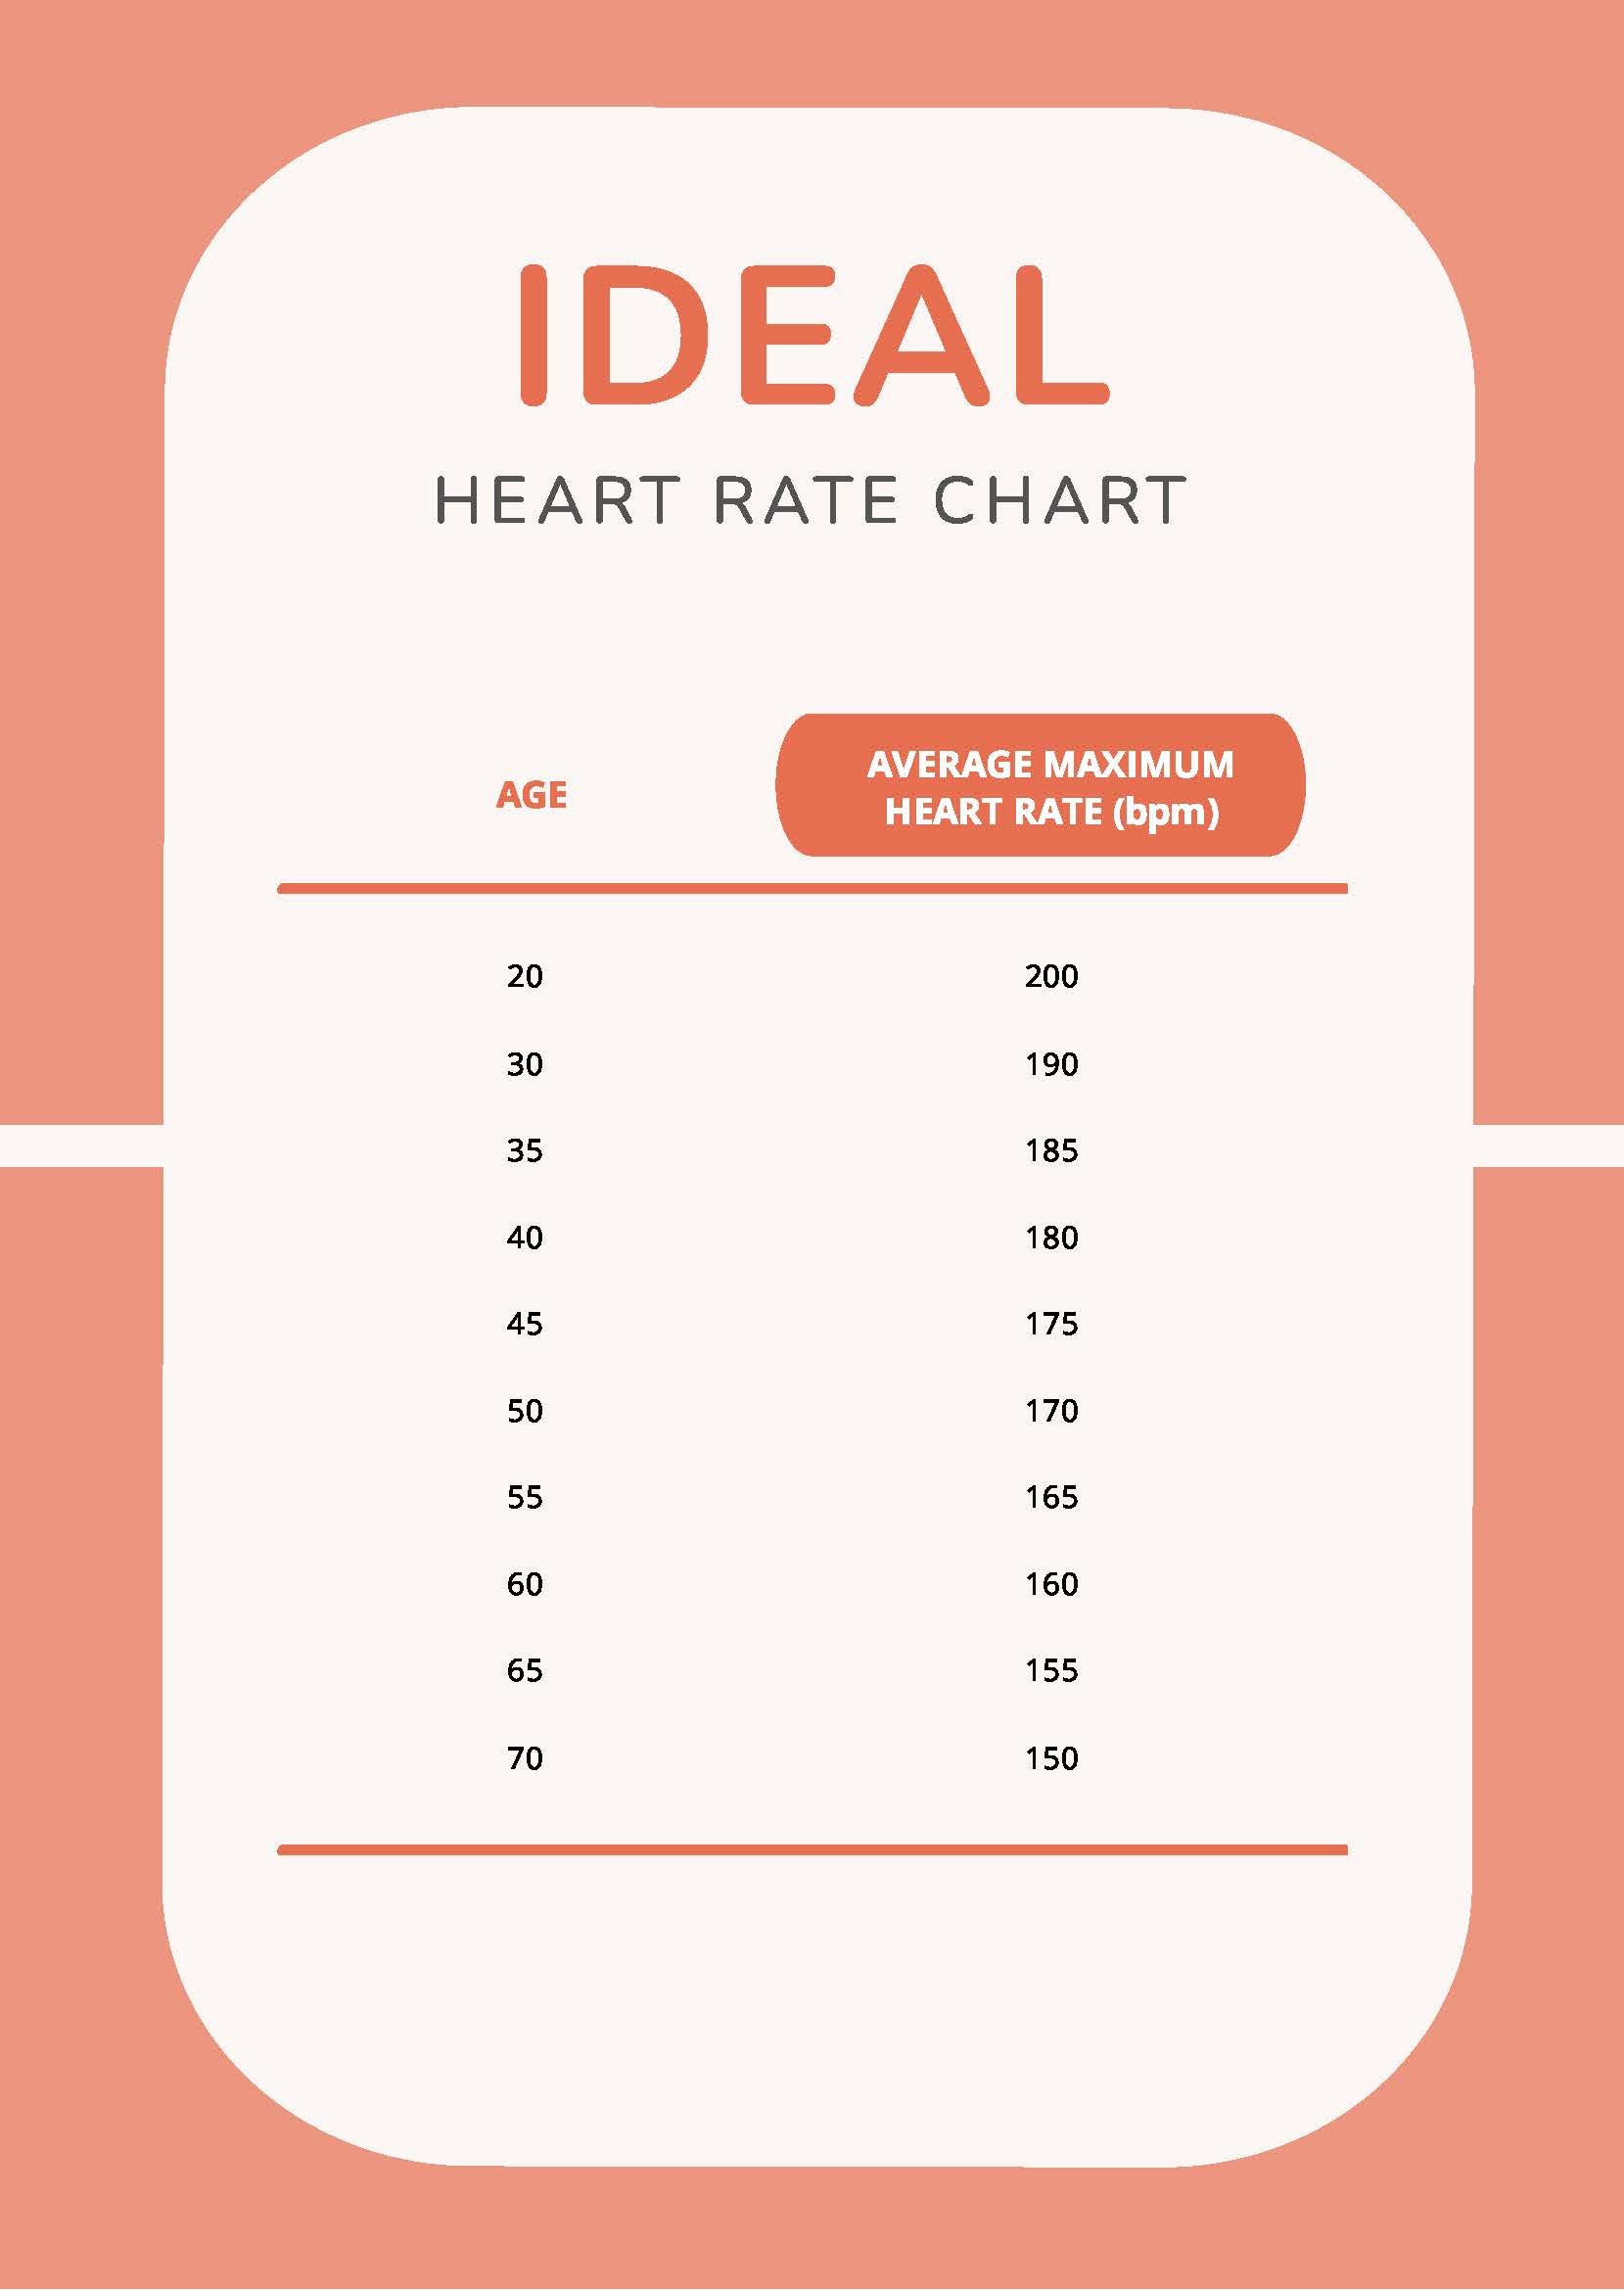 https://images.template.net/99936/ideal-heart-rate-chart-0vnhj.jpg